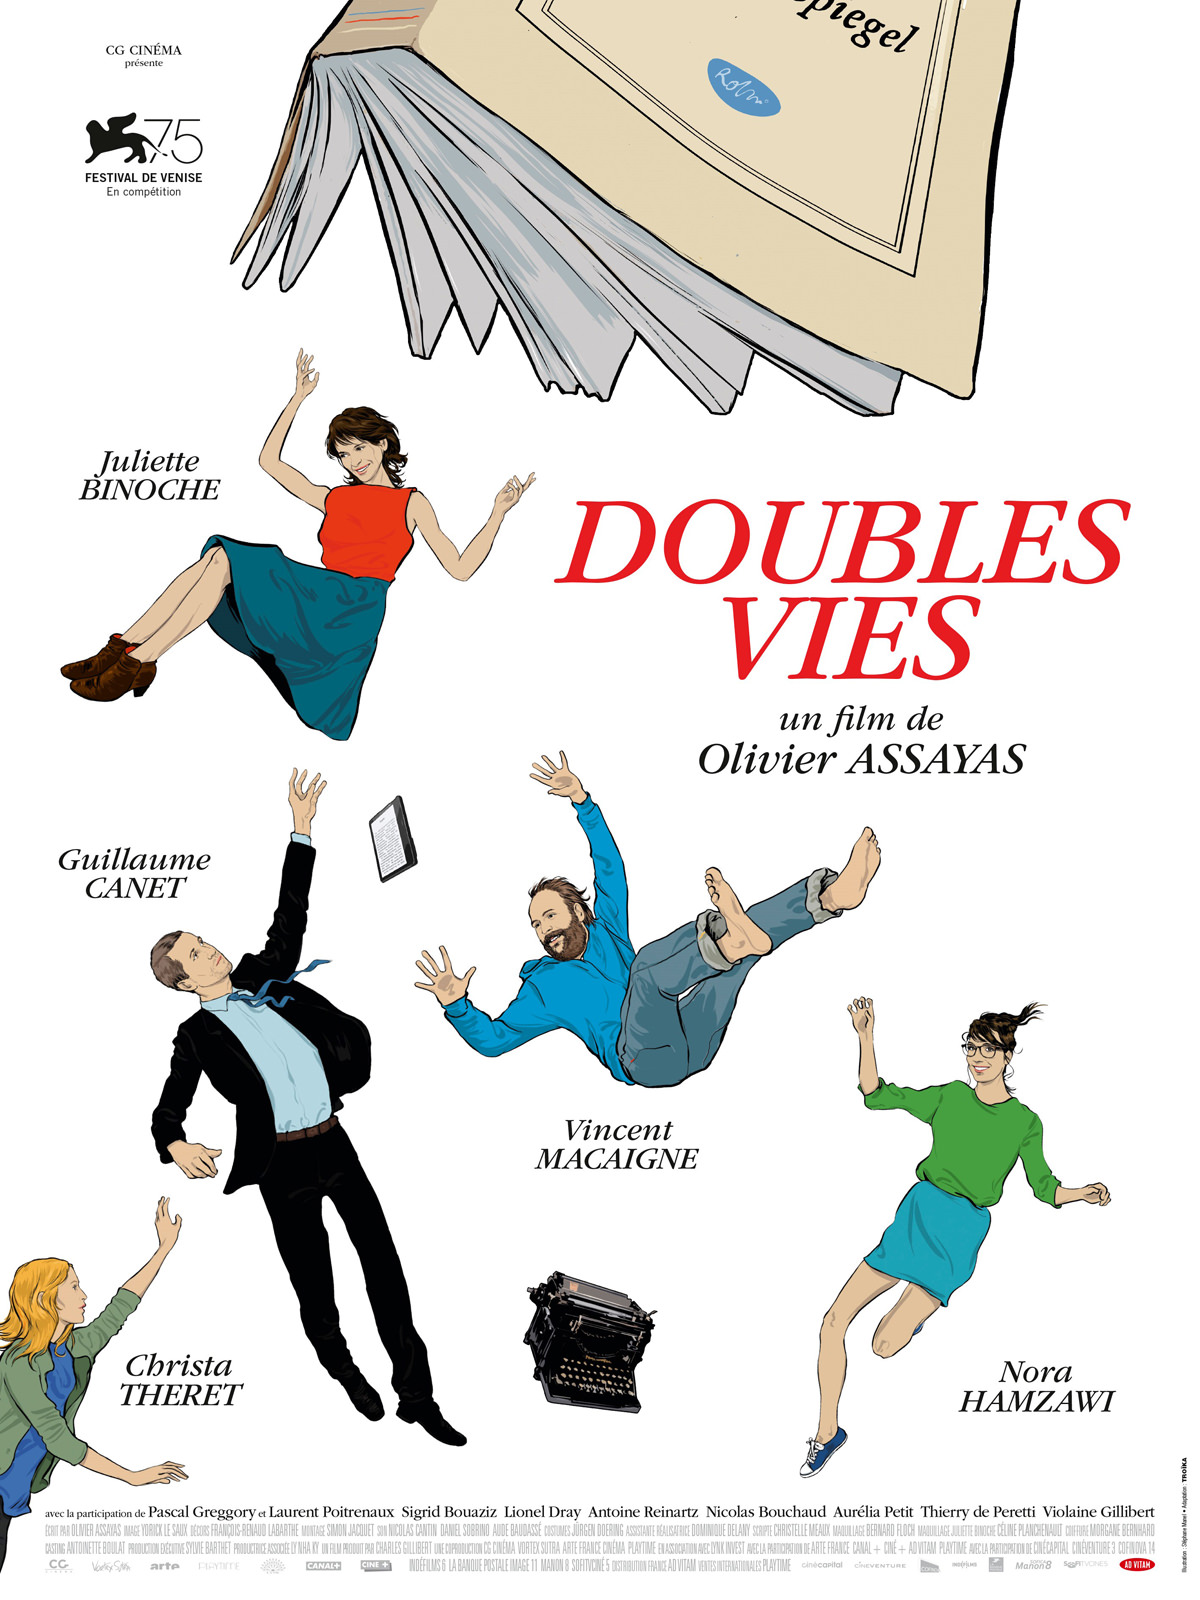 Doubles vies d'Olivier Assayas